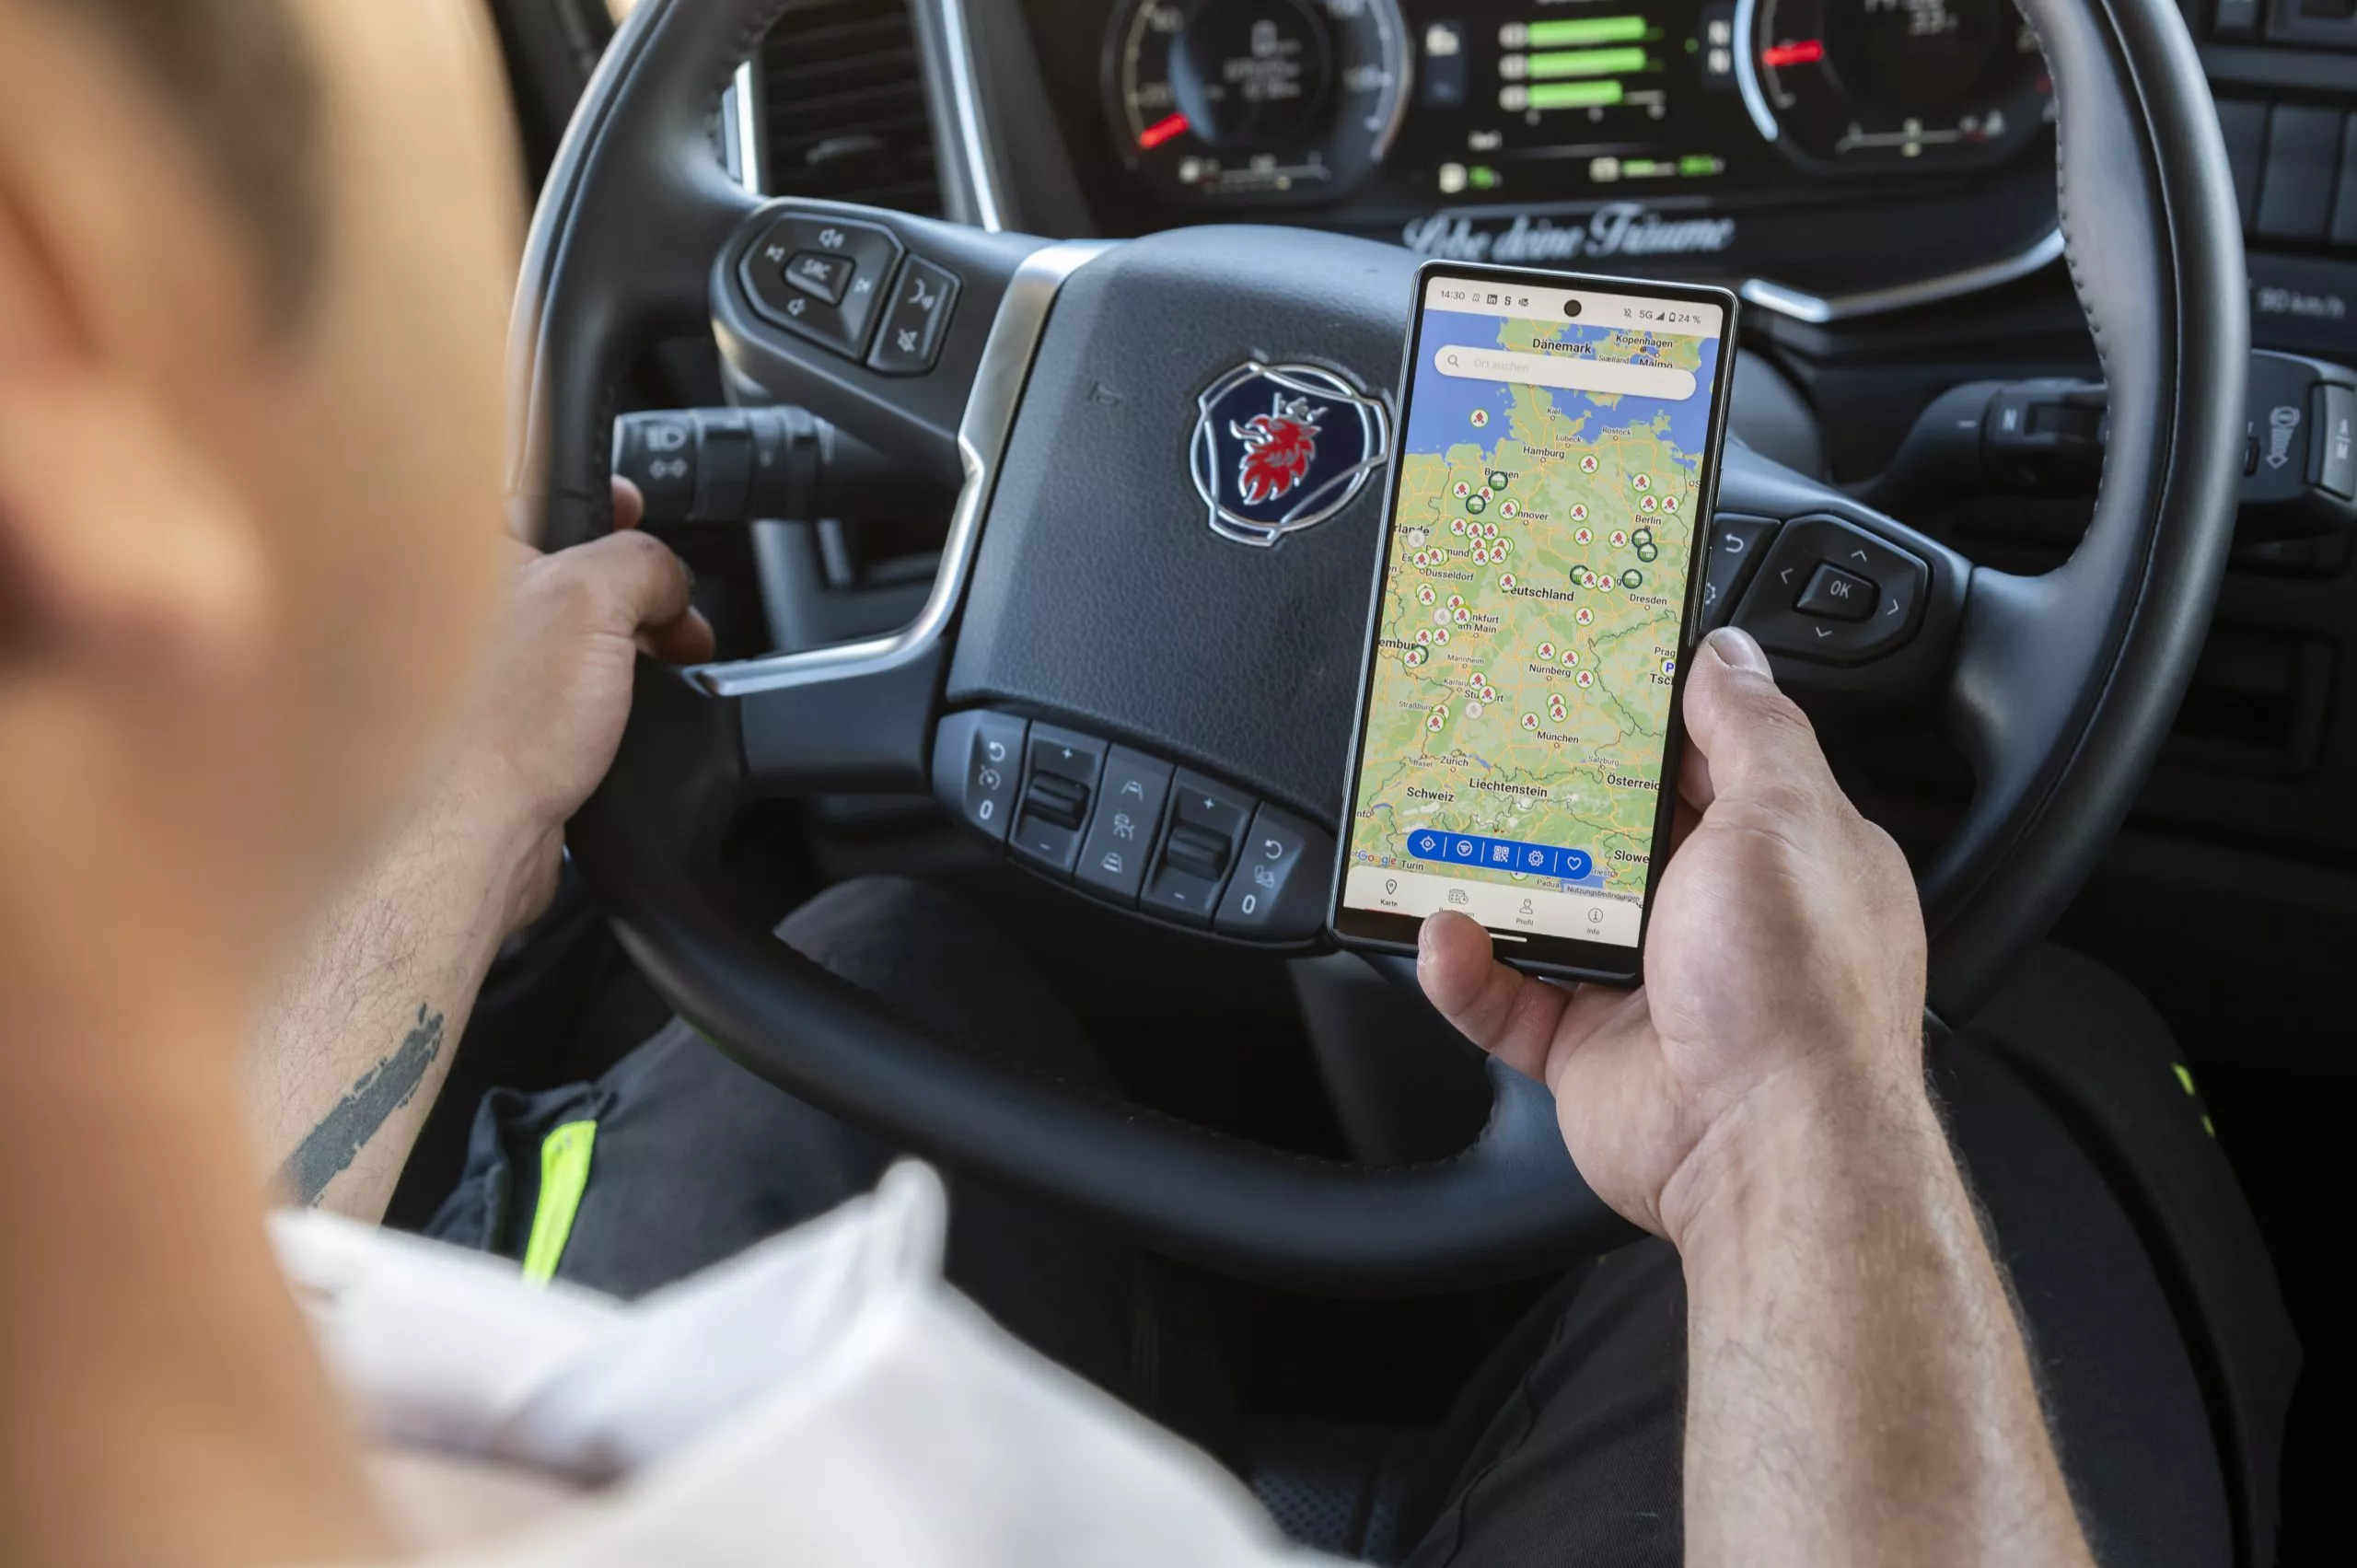 LKW Fahrer hält Smartphone mit Landkarte in der Hand